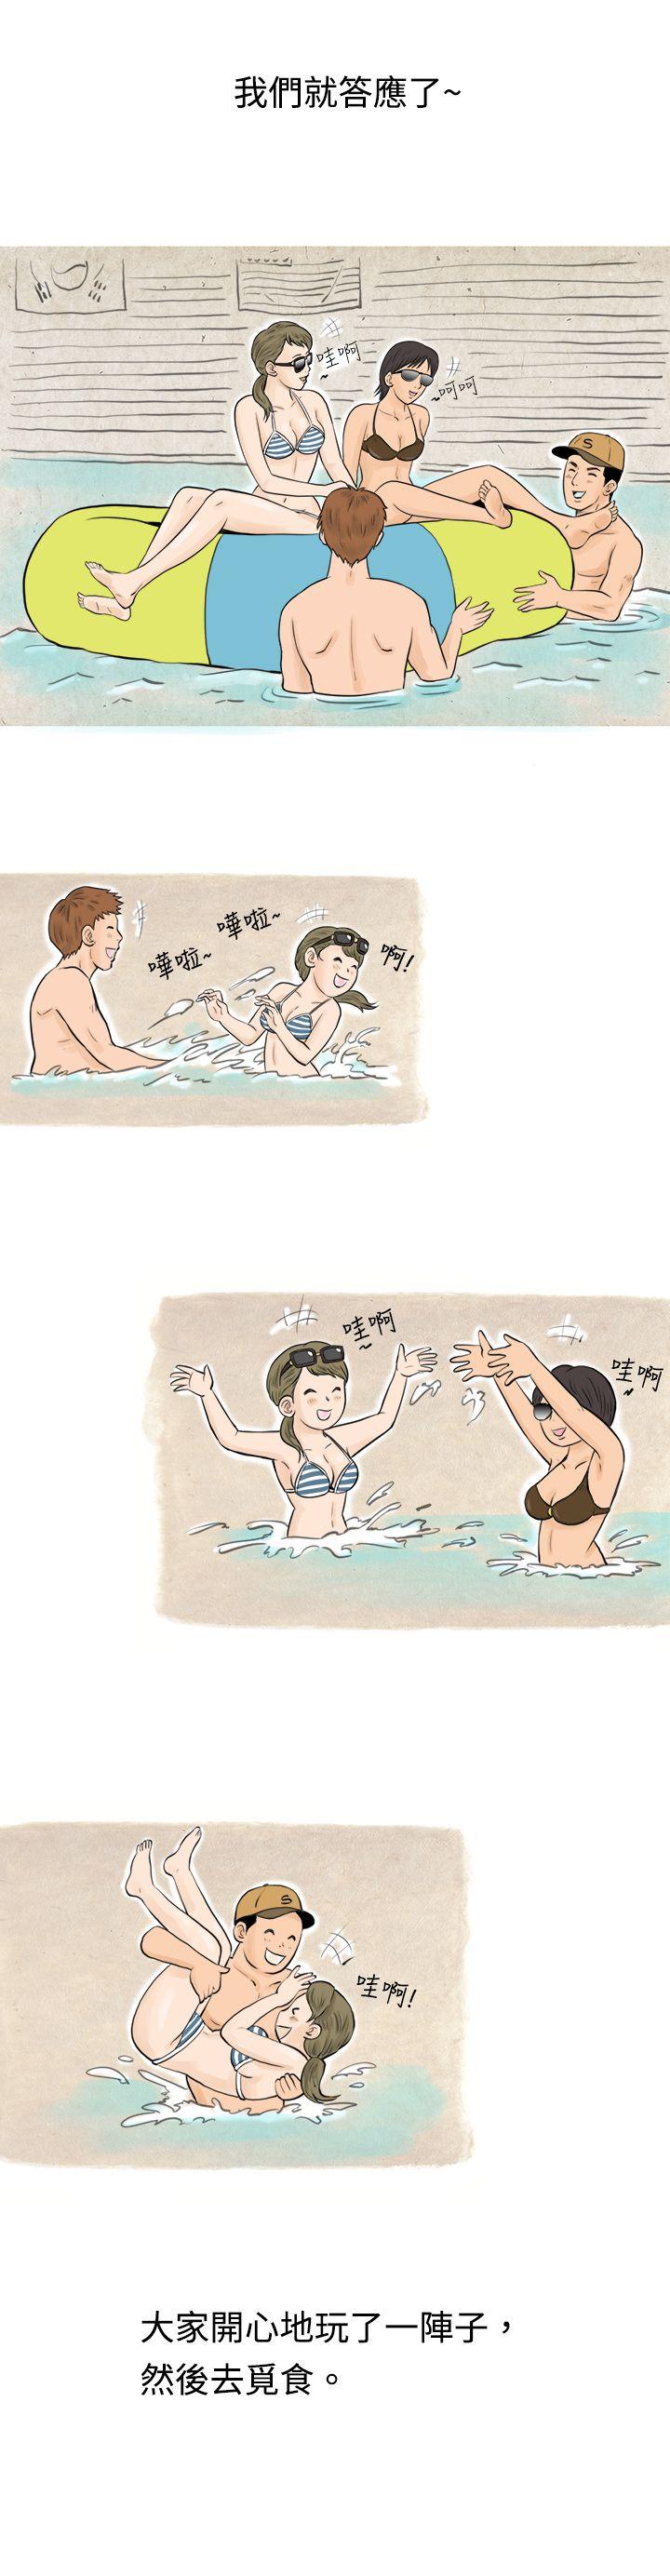 韩国污漫画 秘密Story 在梨泰院游泳池中的小故事(上) 7